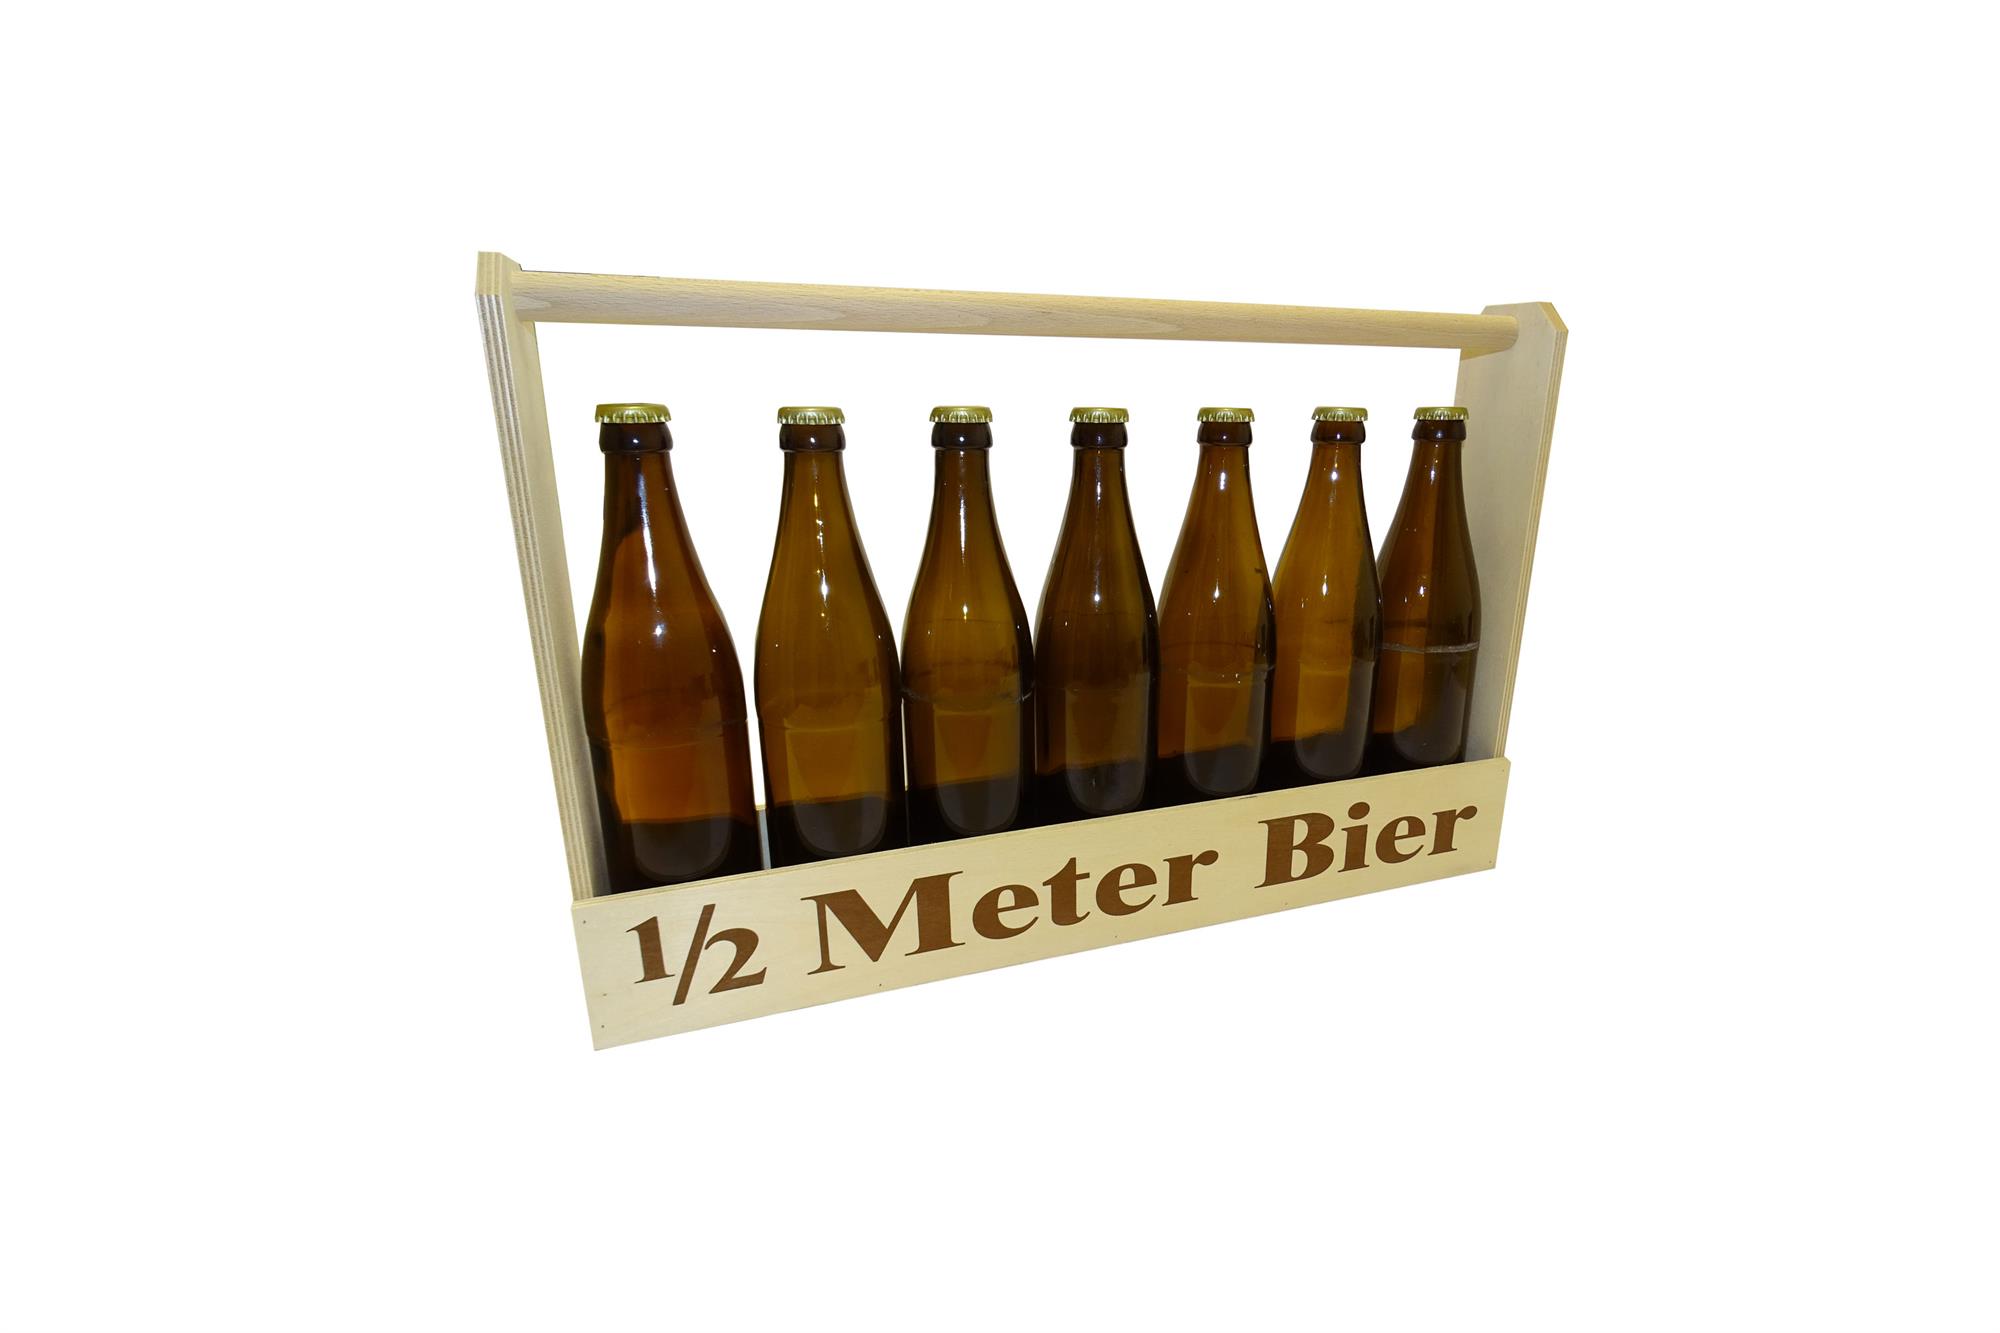 de:1/2 Meter Bier | 7 x 0,5 Liter | Bierflaschen!-_::_-!en:1/2 meter beer | 7 x 0,5 liter | beer bottles!-_::_-!